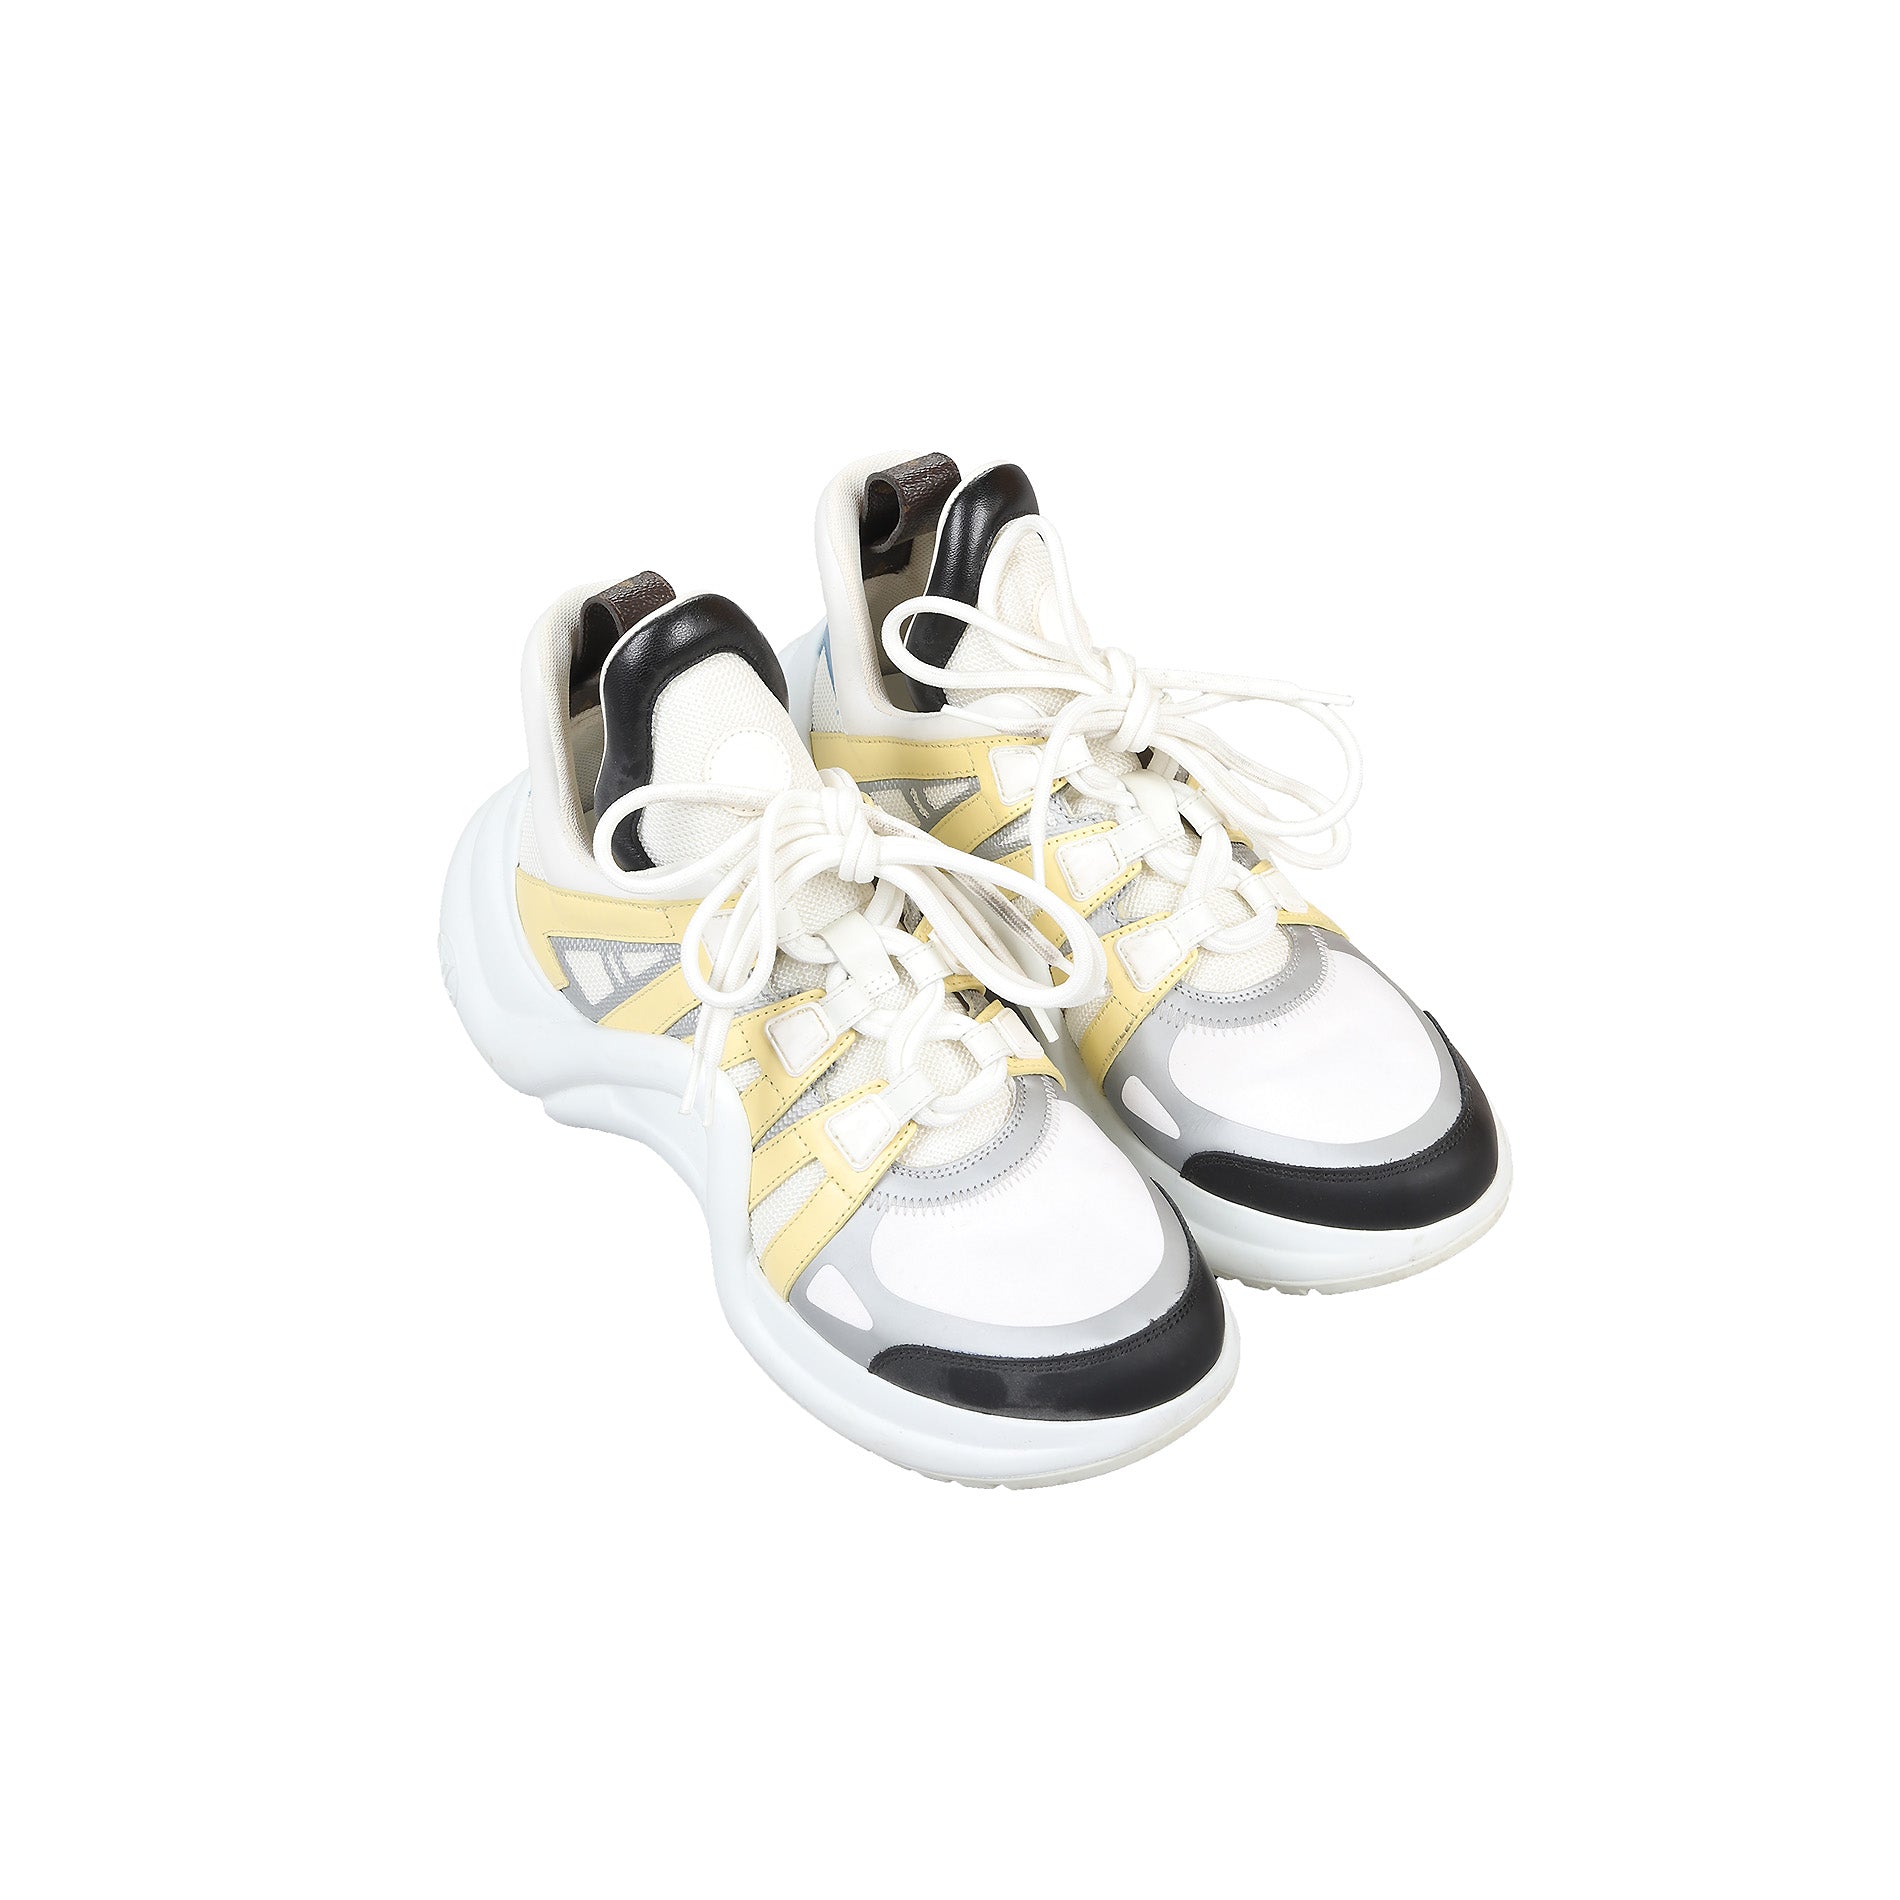 Louis Vuitton SS2018 Archlight Sneaker